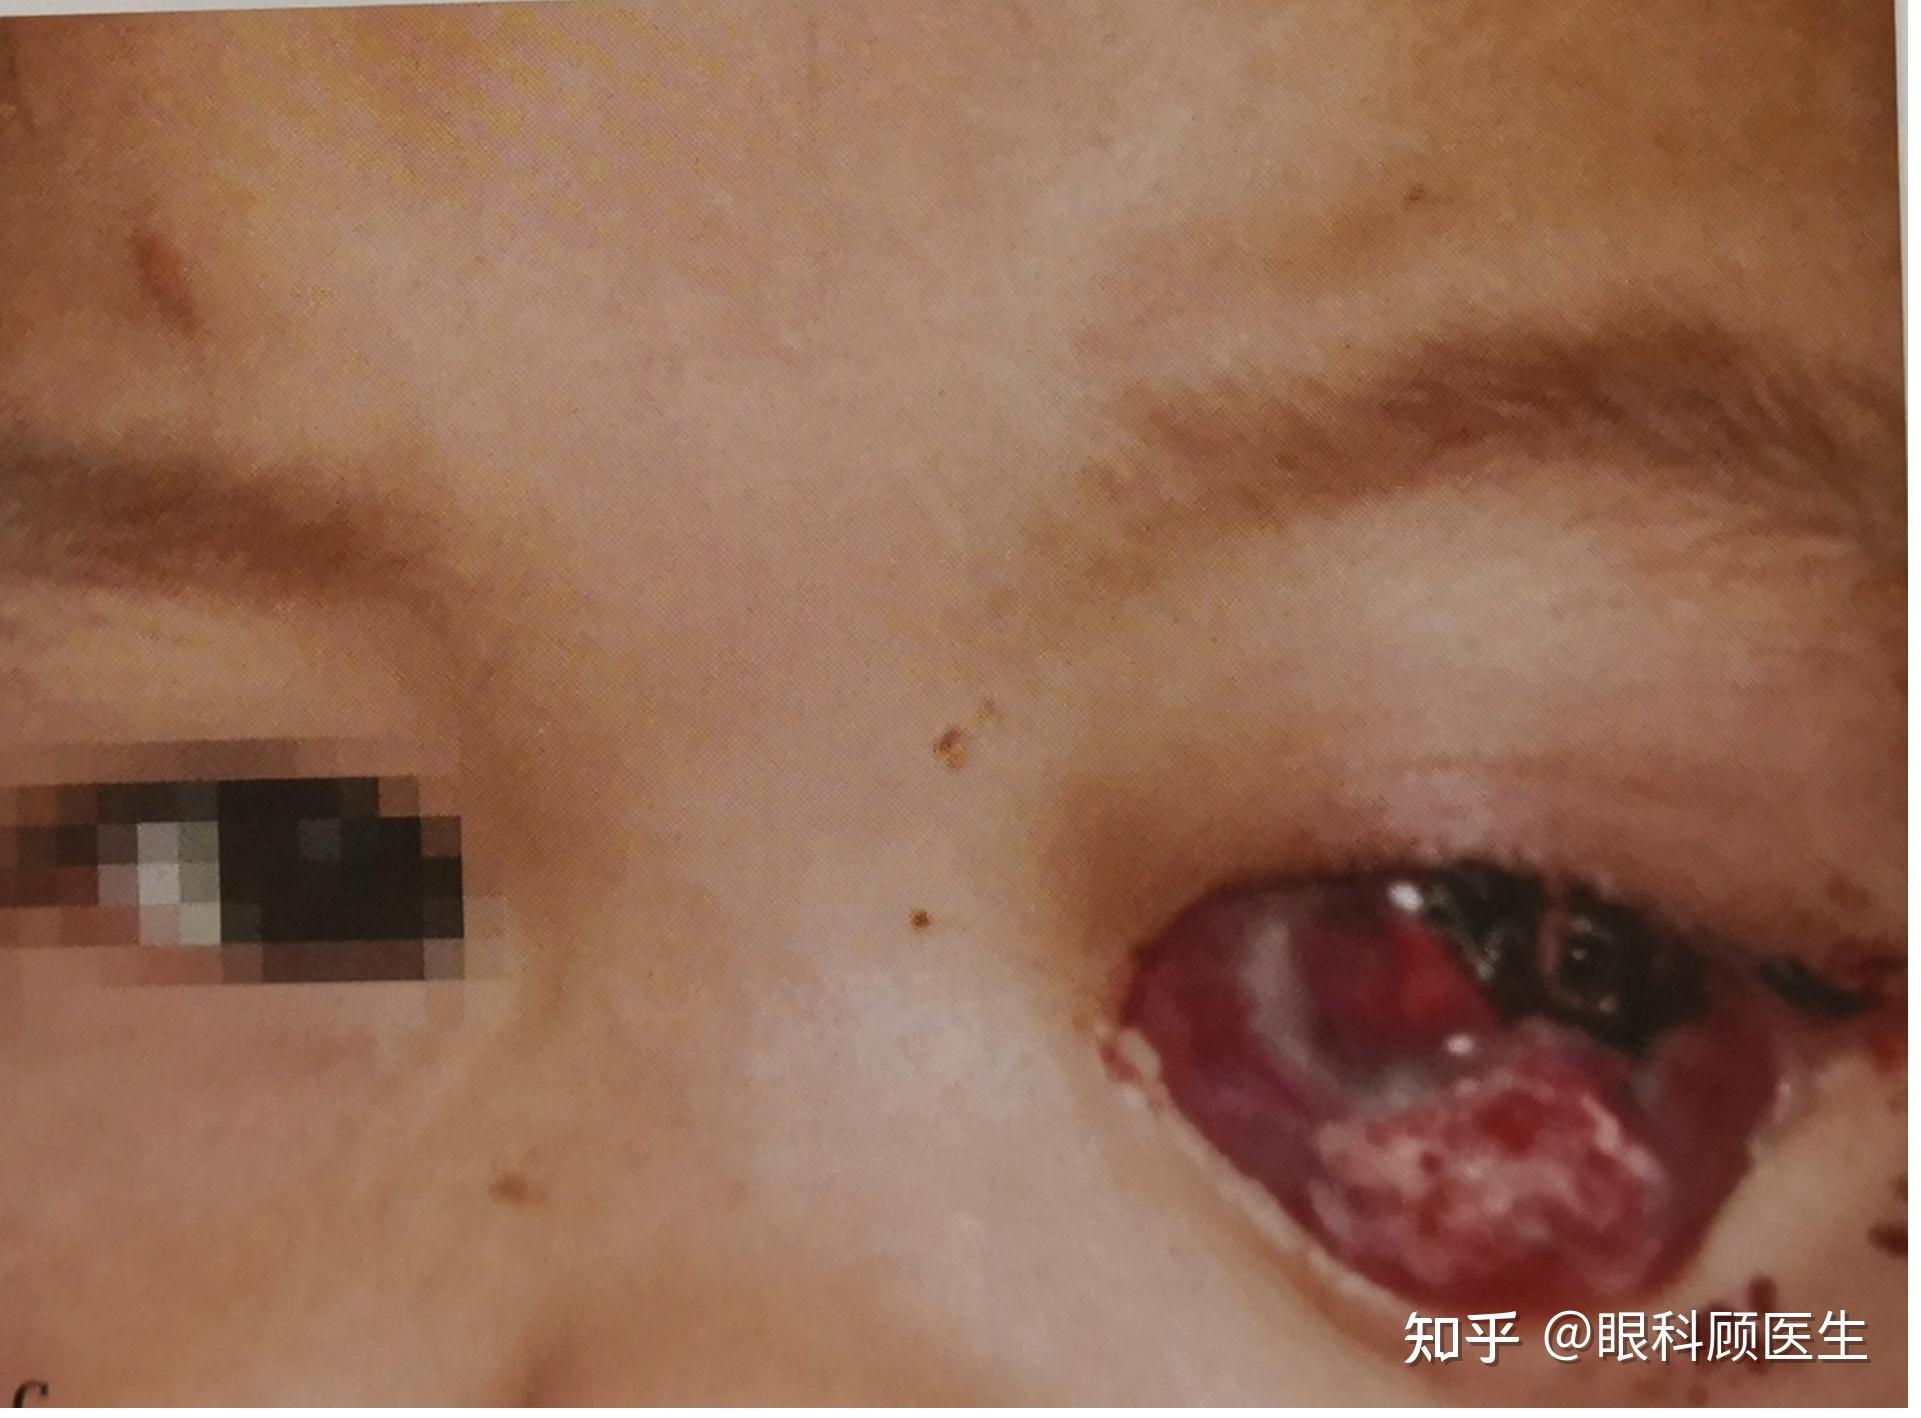 小孩眼睛视网膜瘤图片图片